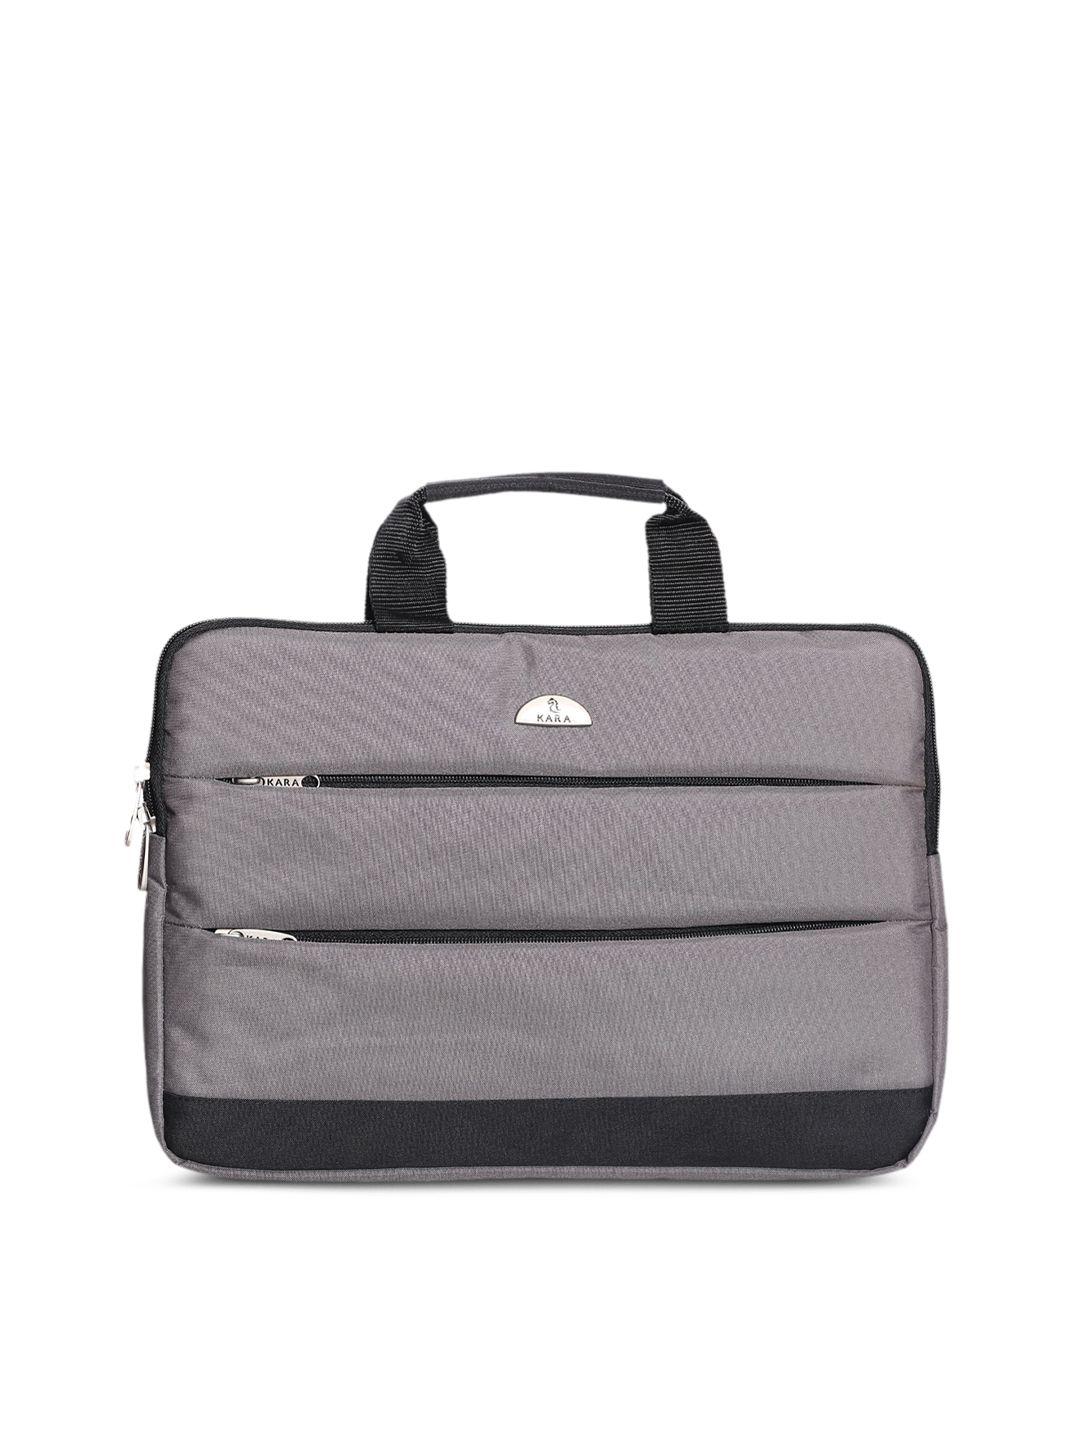 kara unisex grey solid laptop bag